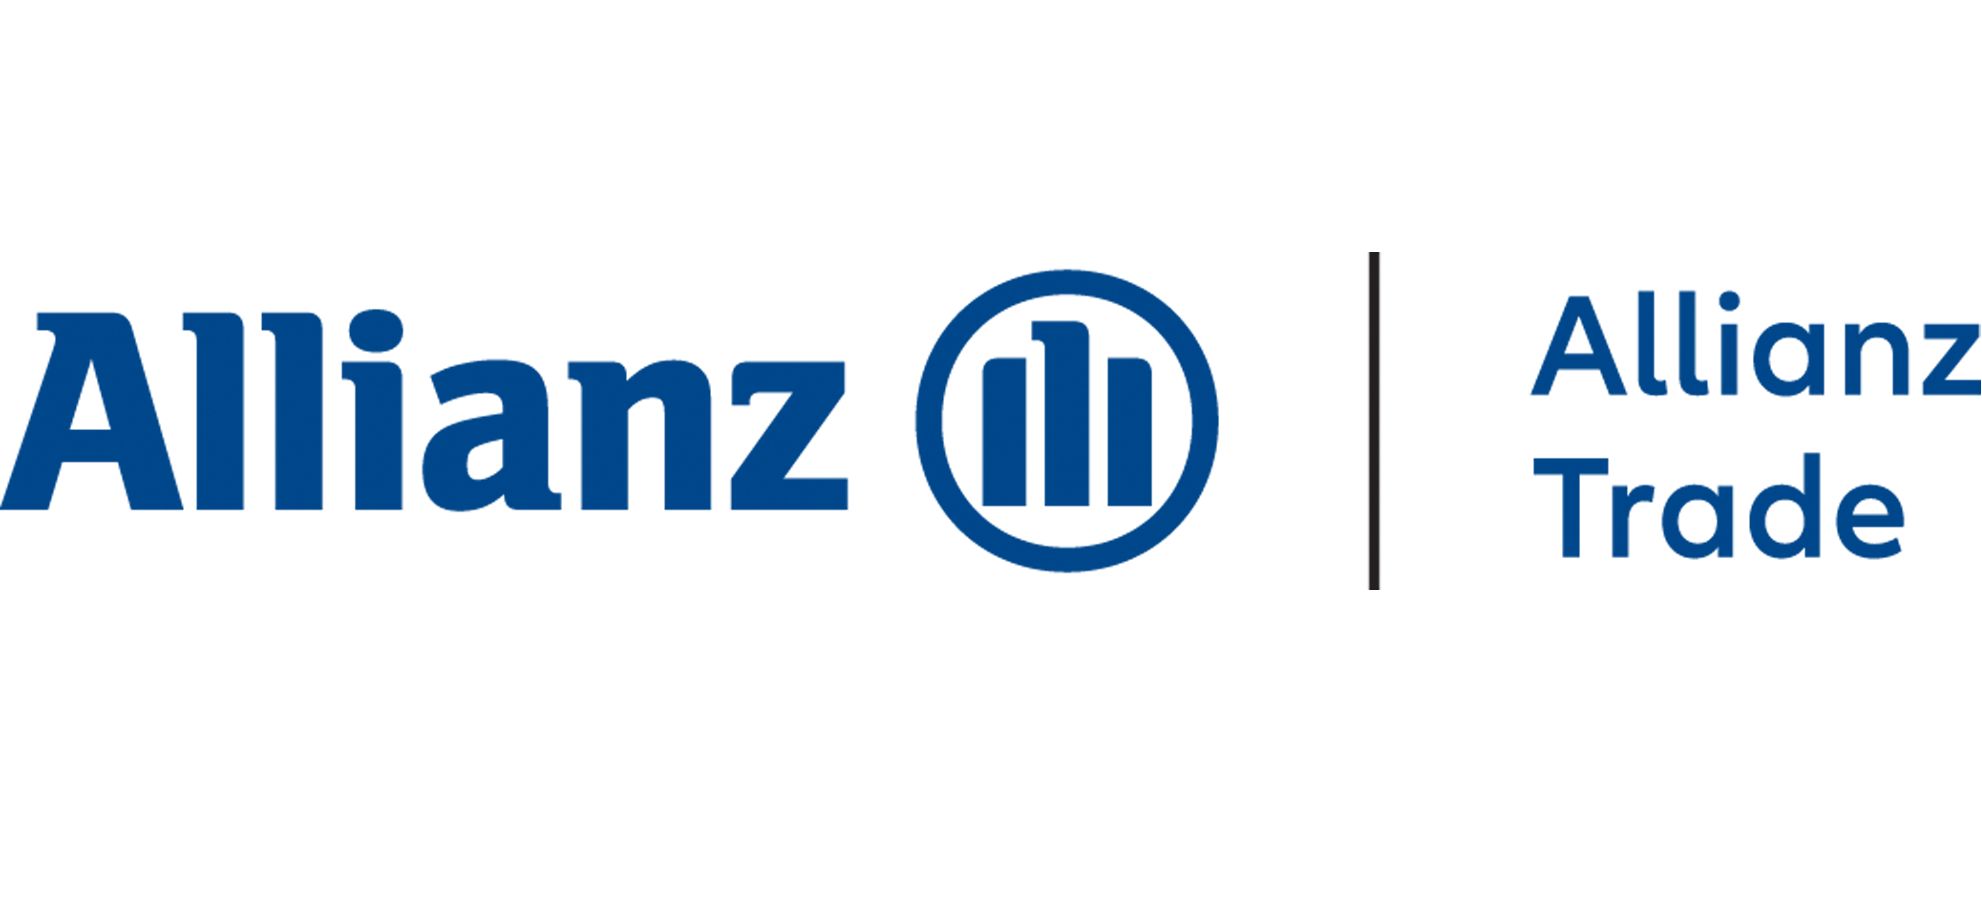 allianz-trade-logo-positive-1982x912.png